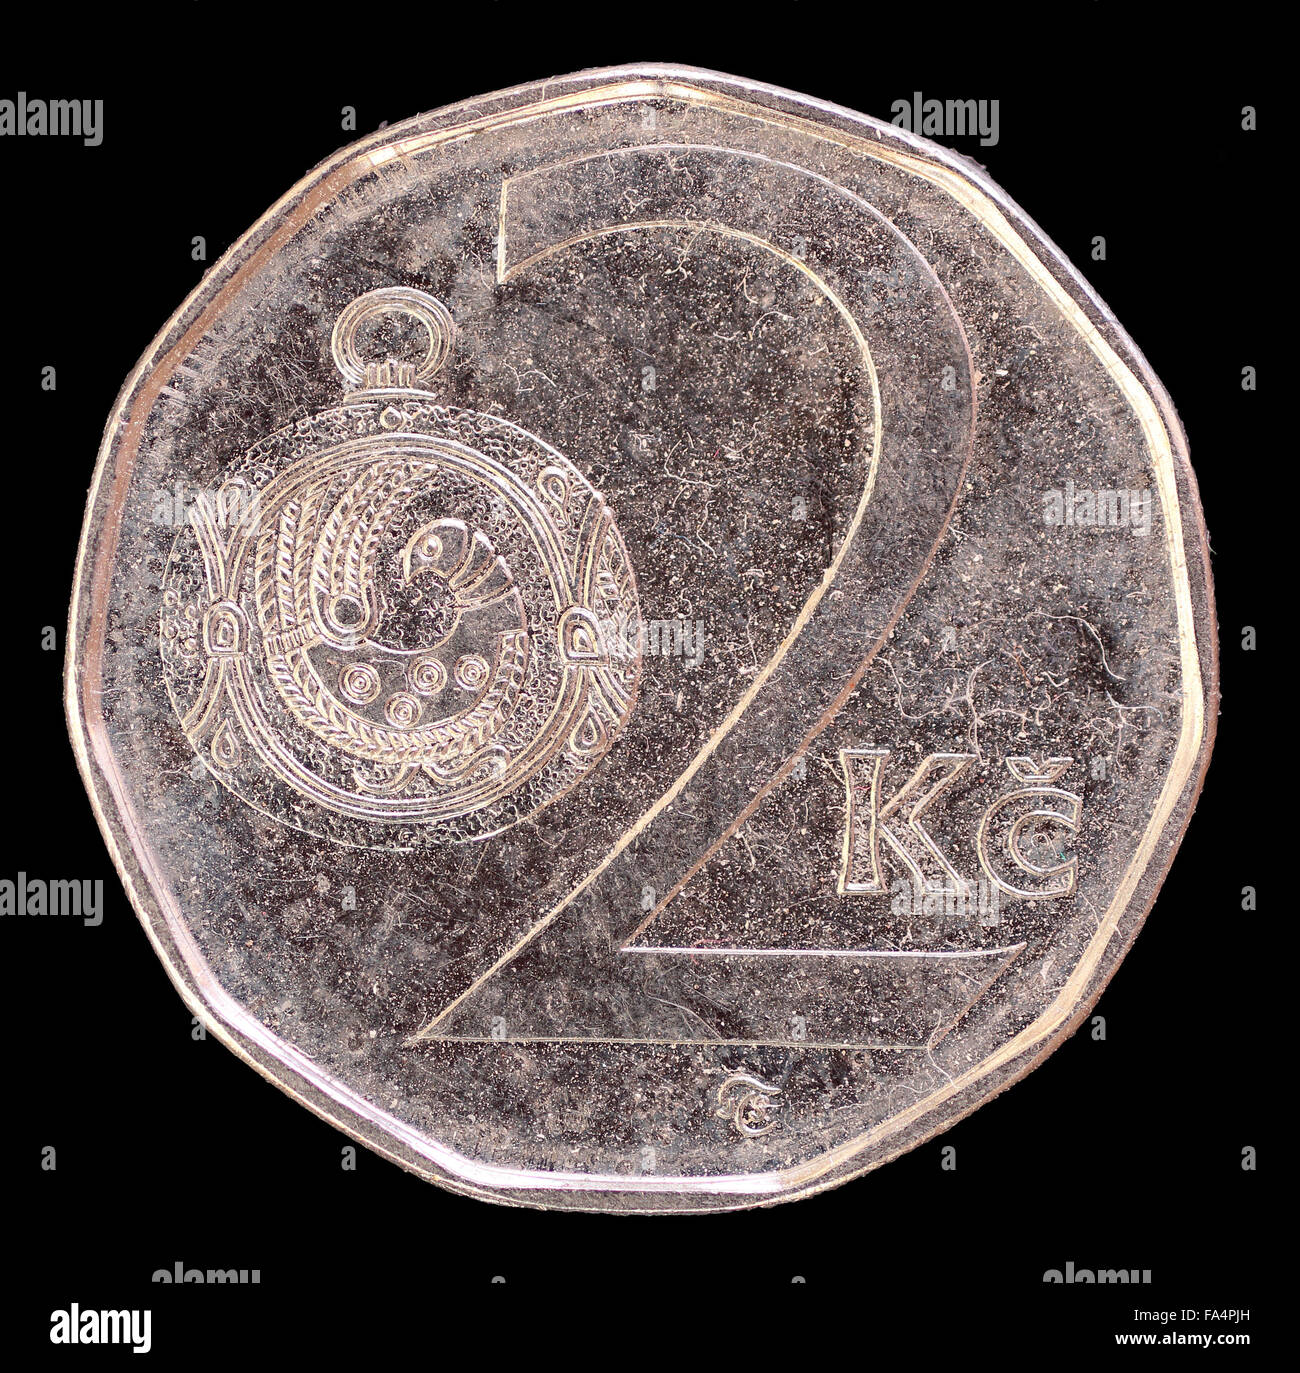 La faccia di coda di 2 corone coin, rilasciati dalla Repubblica ceca nel 2009, raffigurante un grande pulsante di Moravian-gioiello. Immagine isolata su bla Foto Stock